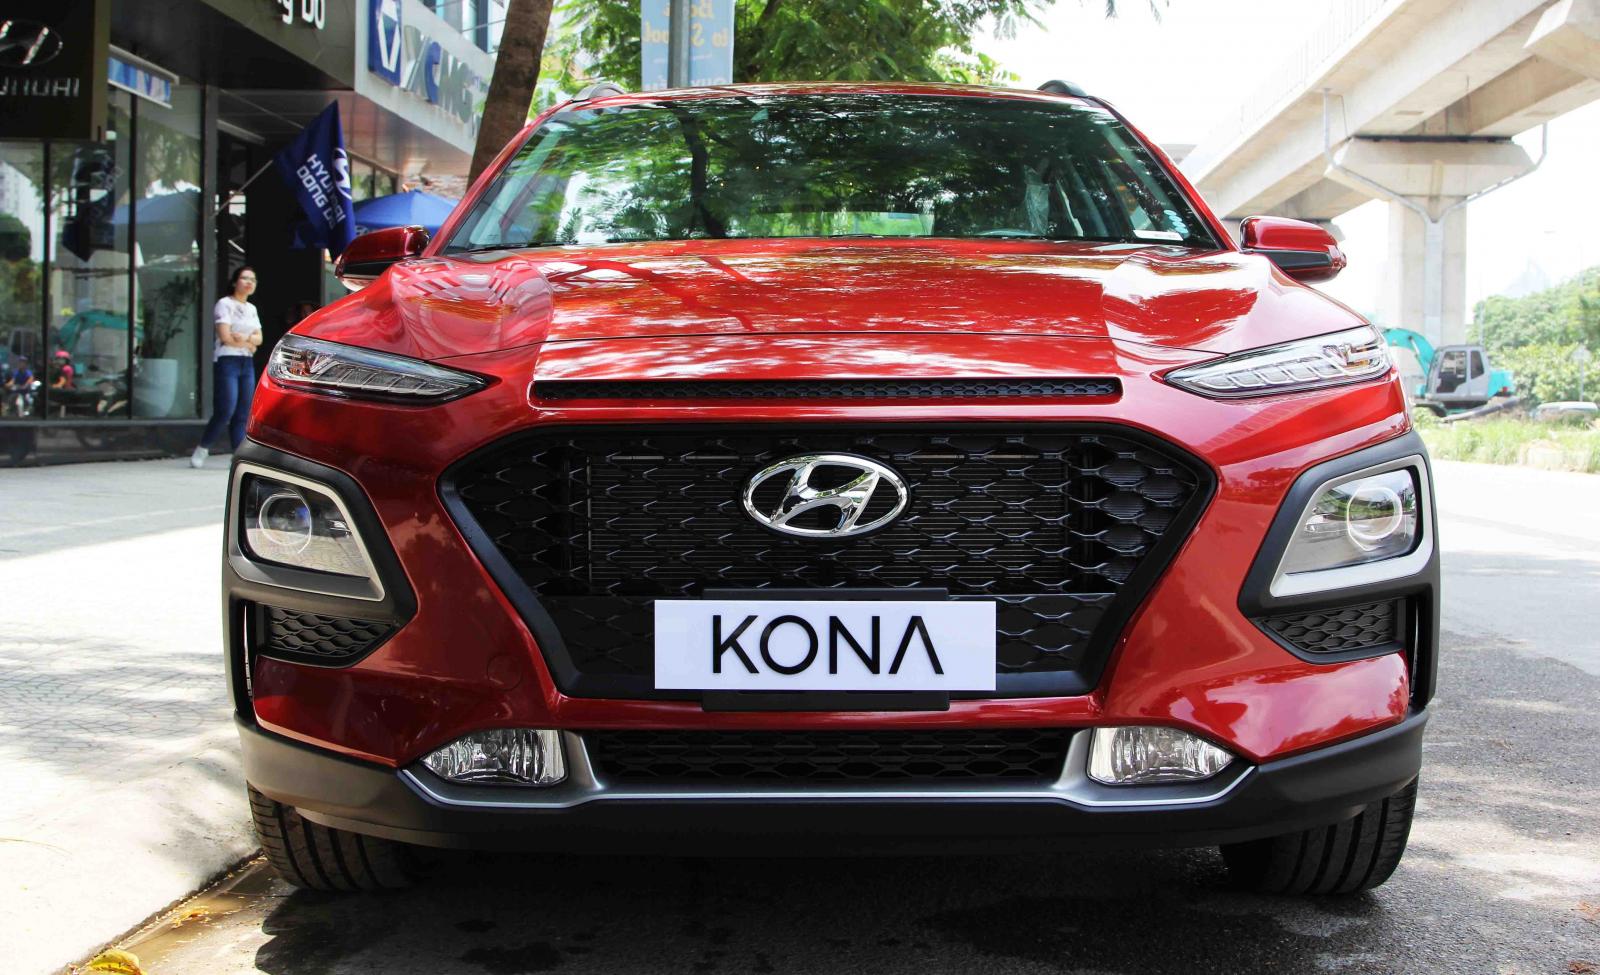 Hyundai Hyundai khác   2019 - Bán Kona tiêu chuẩn 2019, đủ màu đủ phiên bản giao ngay 